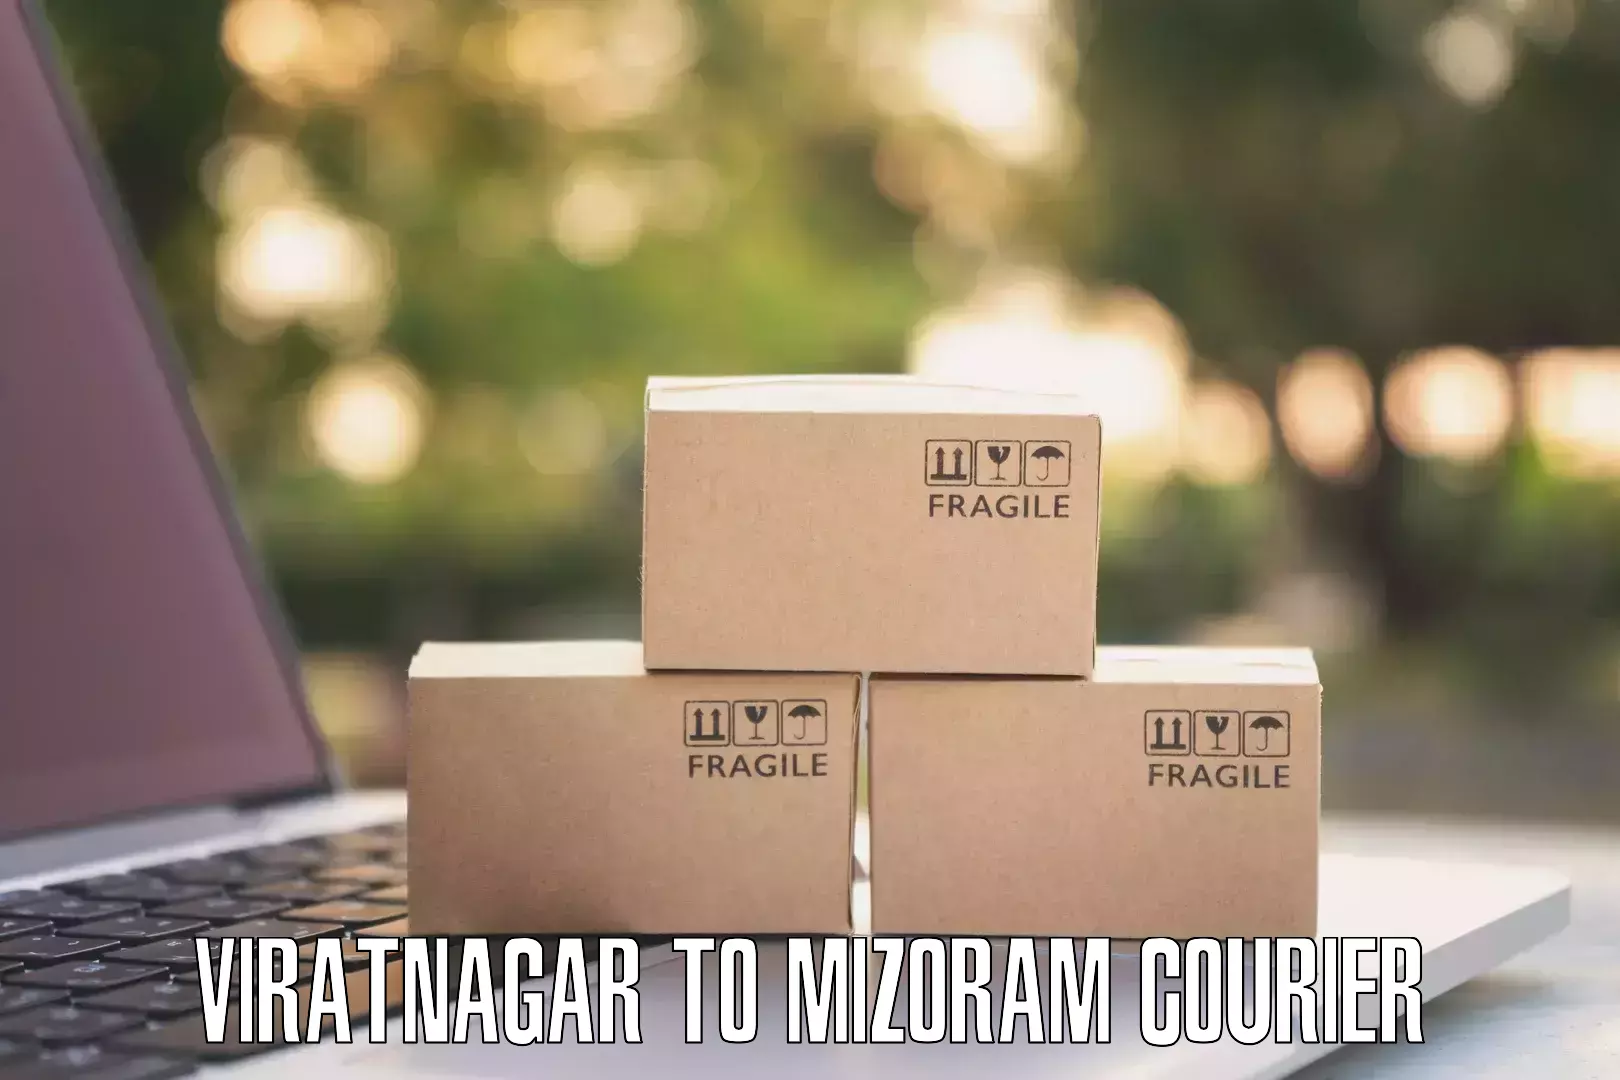 Courier insurance Viratnagar to Serchhip